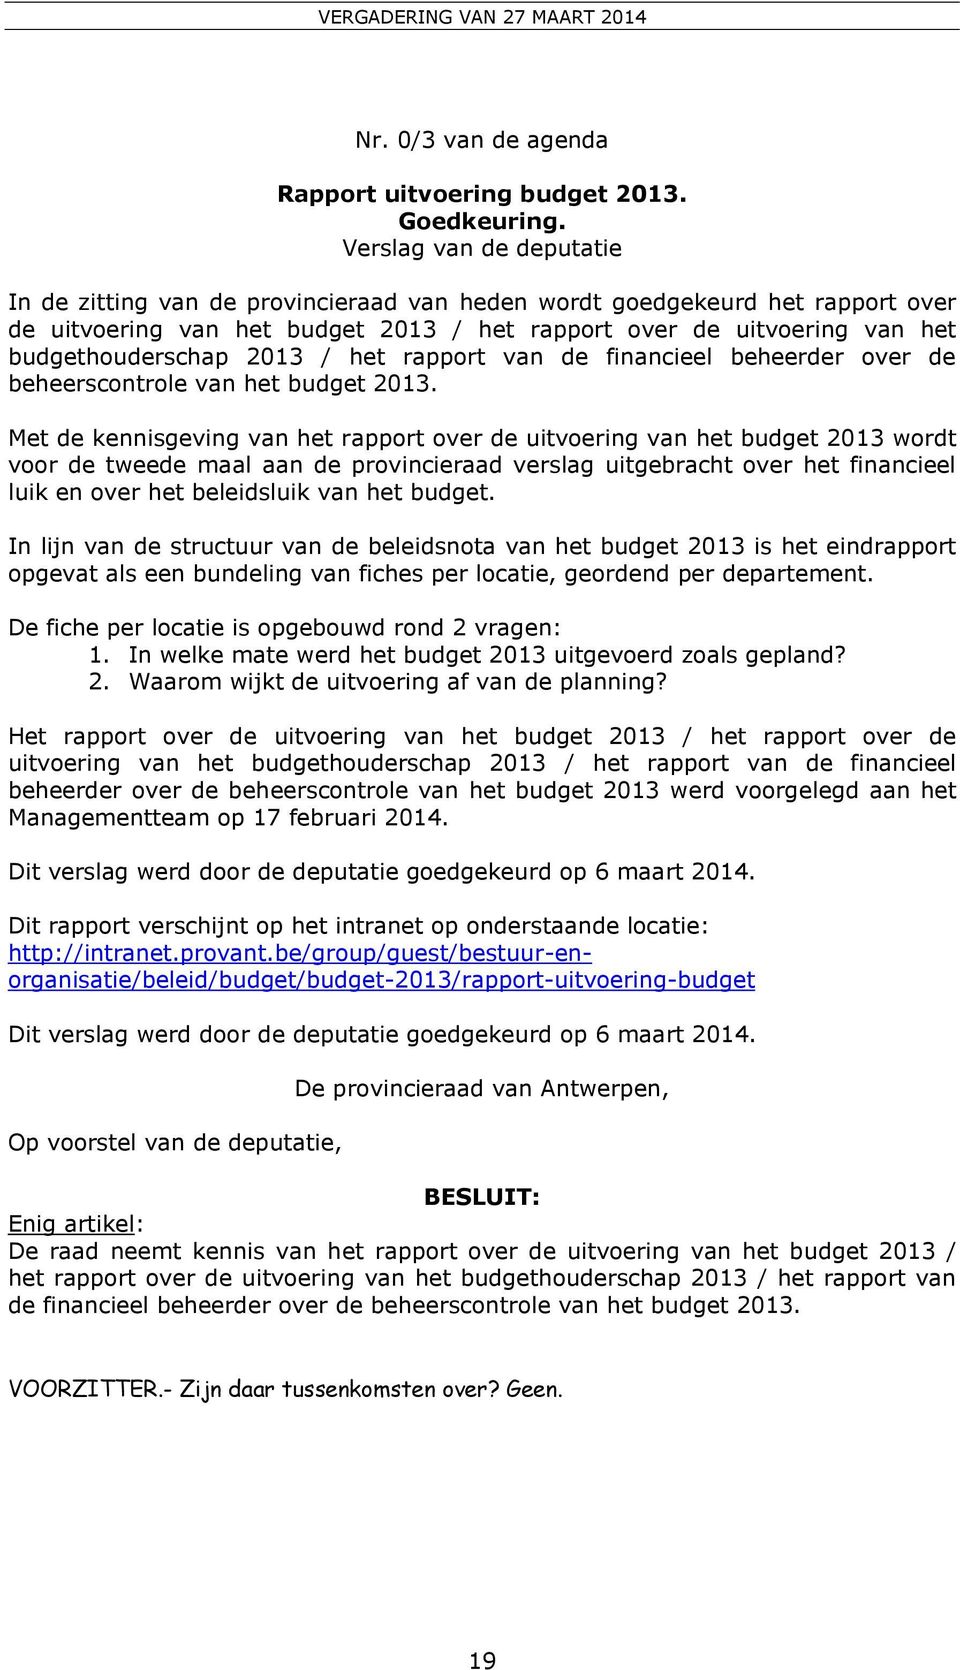 2013 / het rapport van de financieel beheerder over de beheerscontrole van het budget 2013.